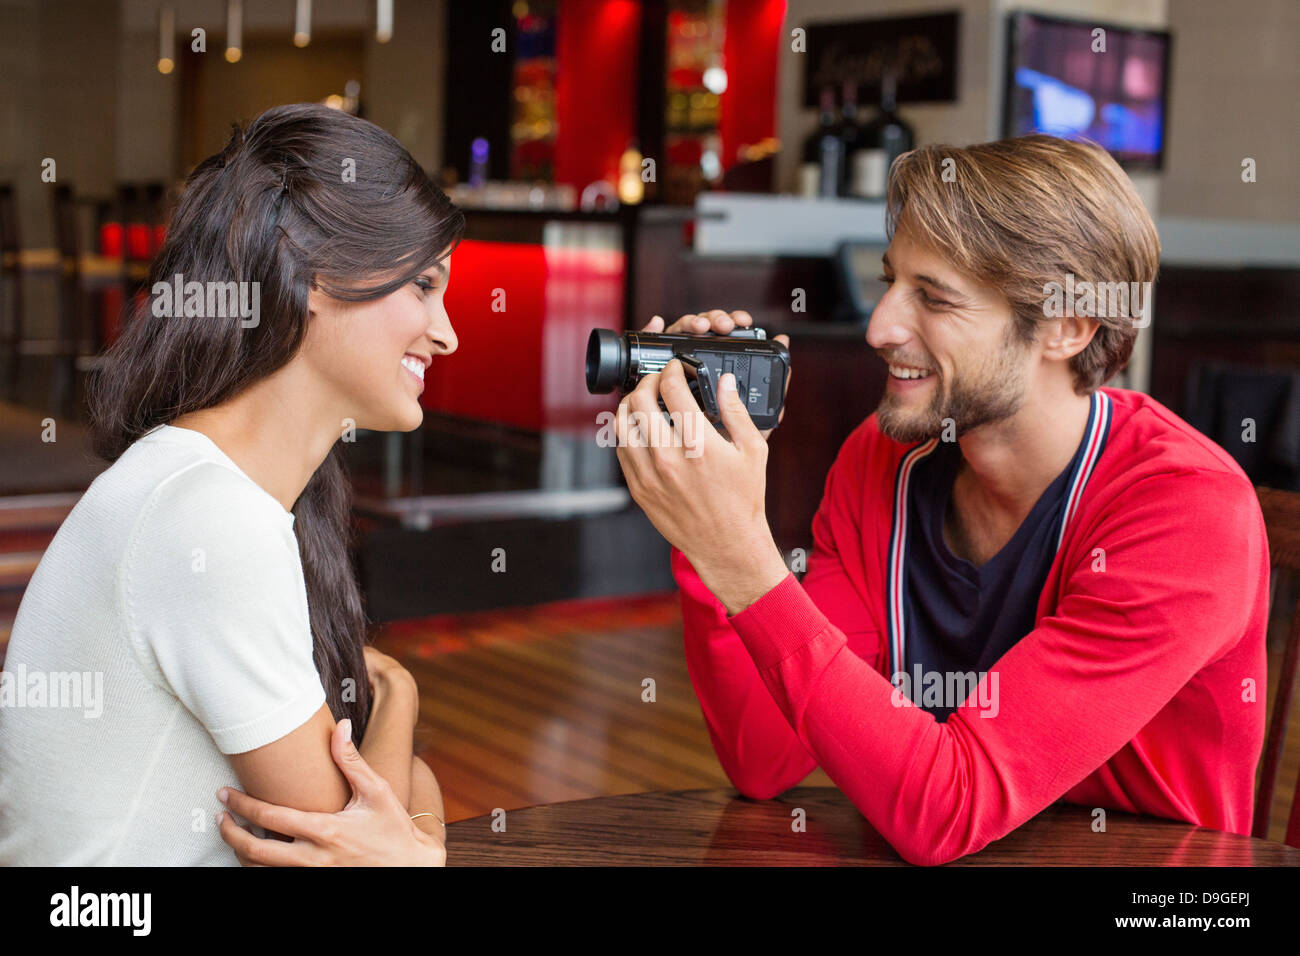 Mann Filmt Seine Freundin Mit Einer Home Video Kamera Stockfotografie Alamy 